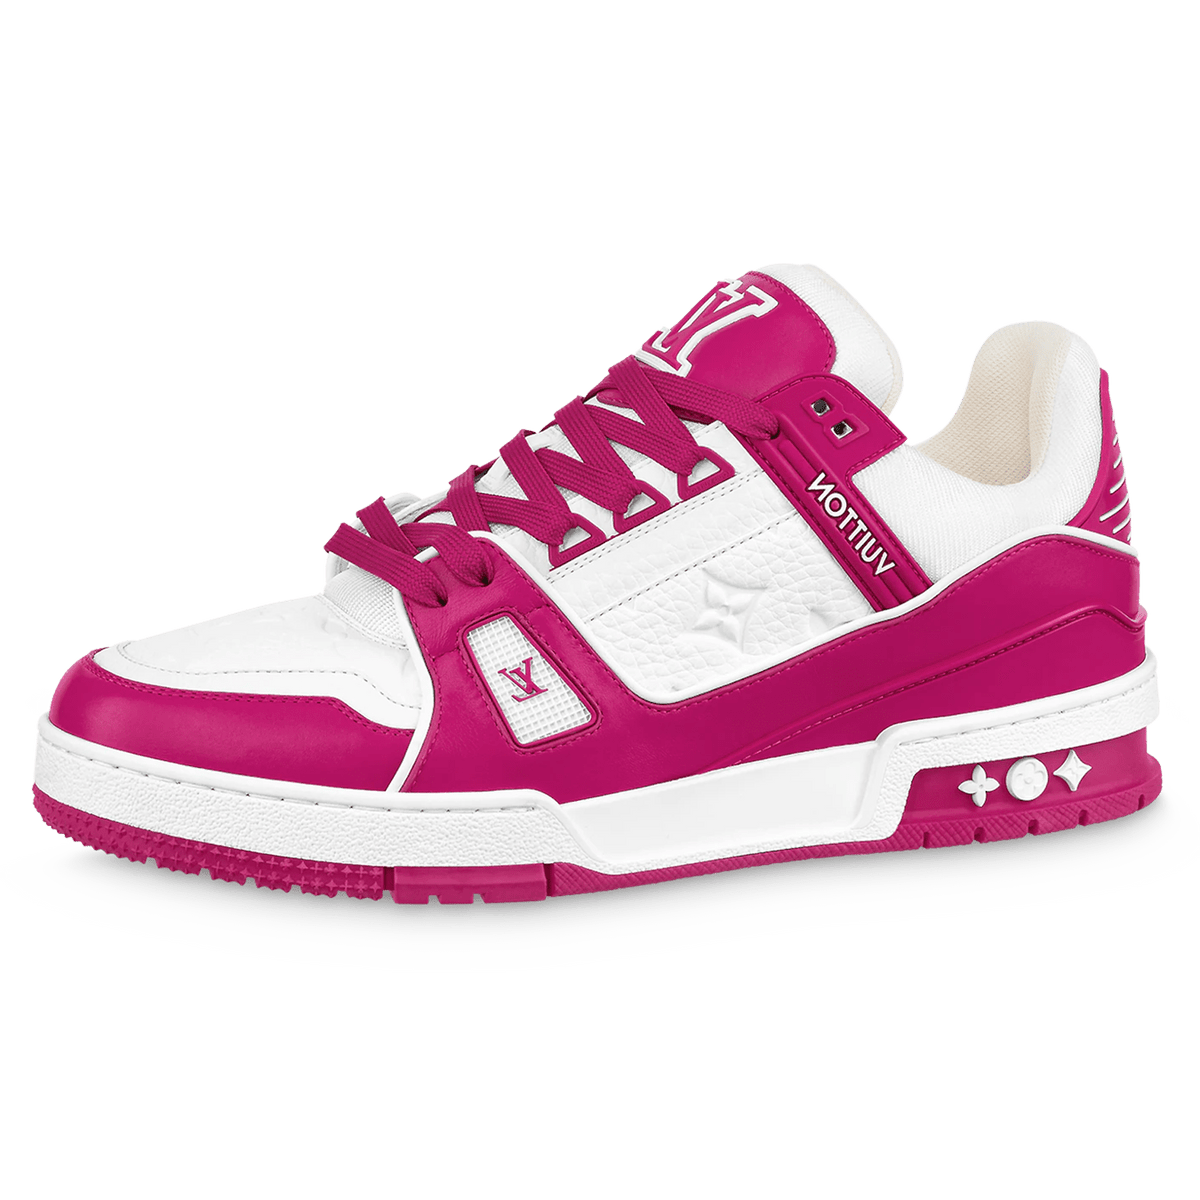 rose lv trainer pink